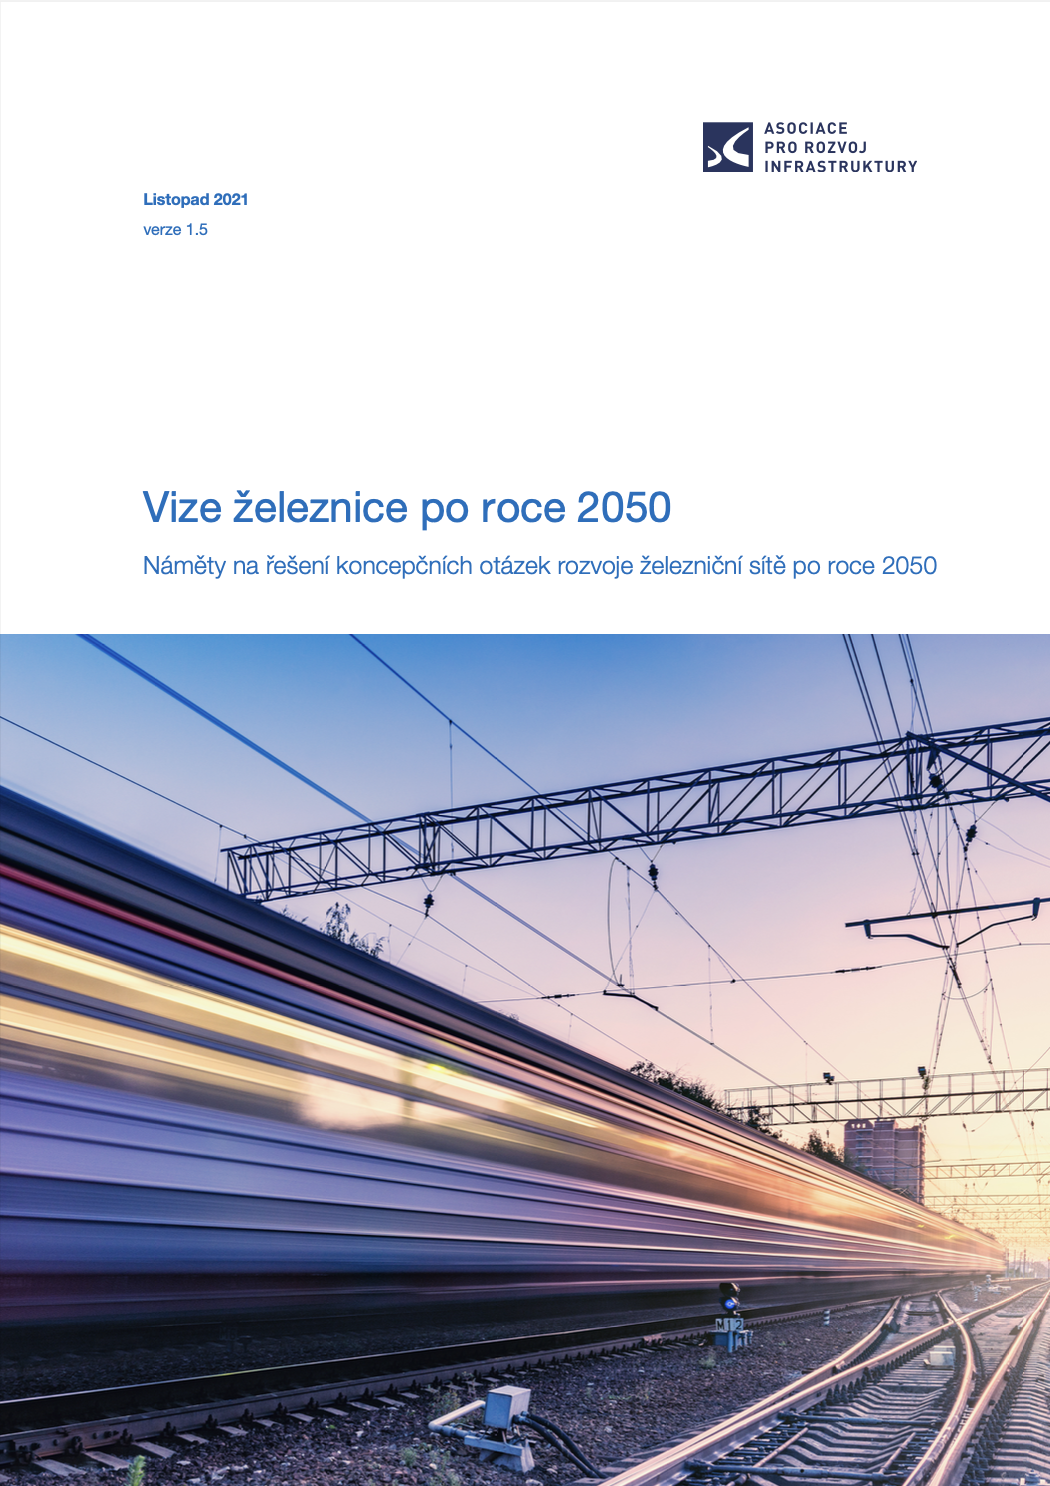 Vize železnice po roce 2050